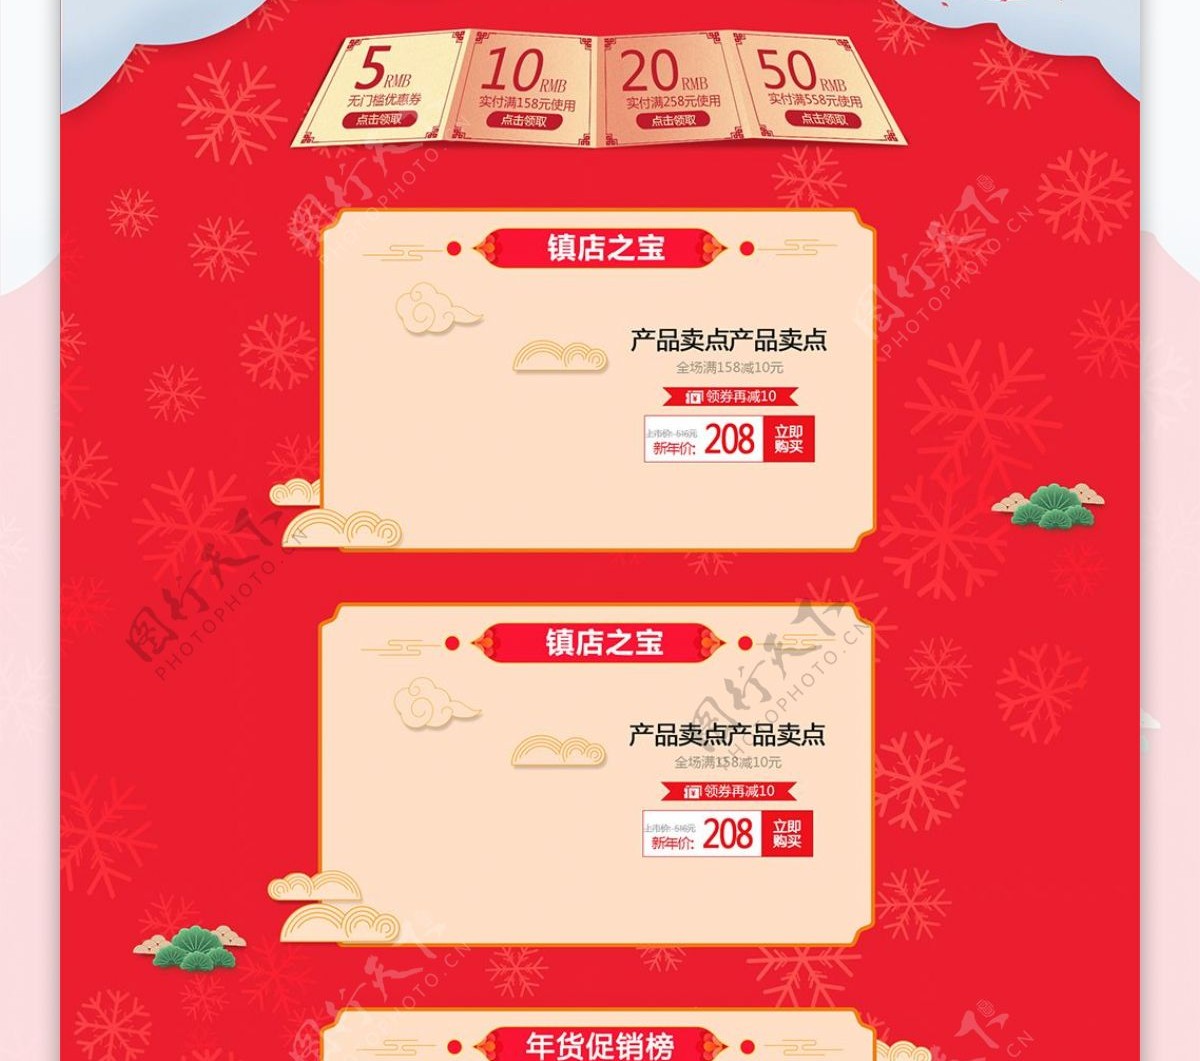 天猫淘宝电商促销年货节休闲零食首页模板